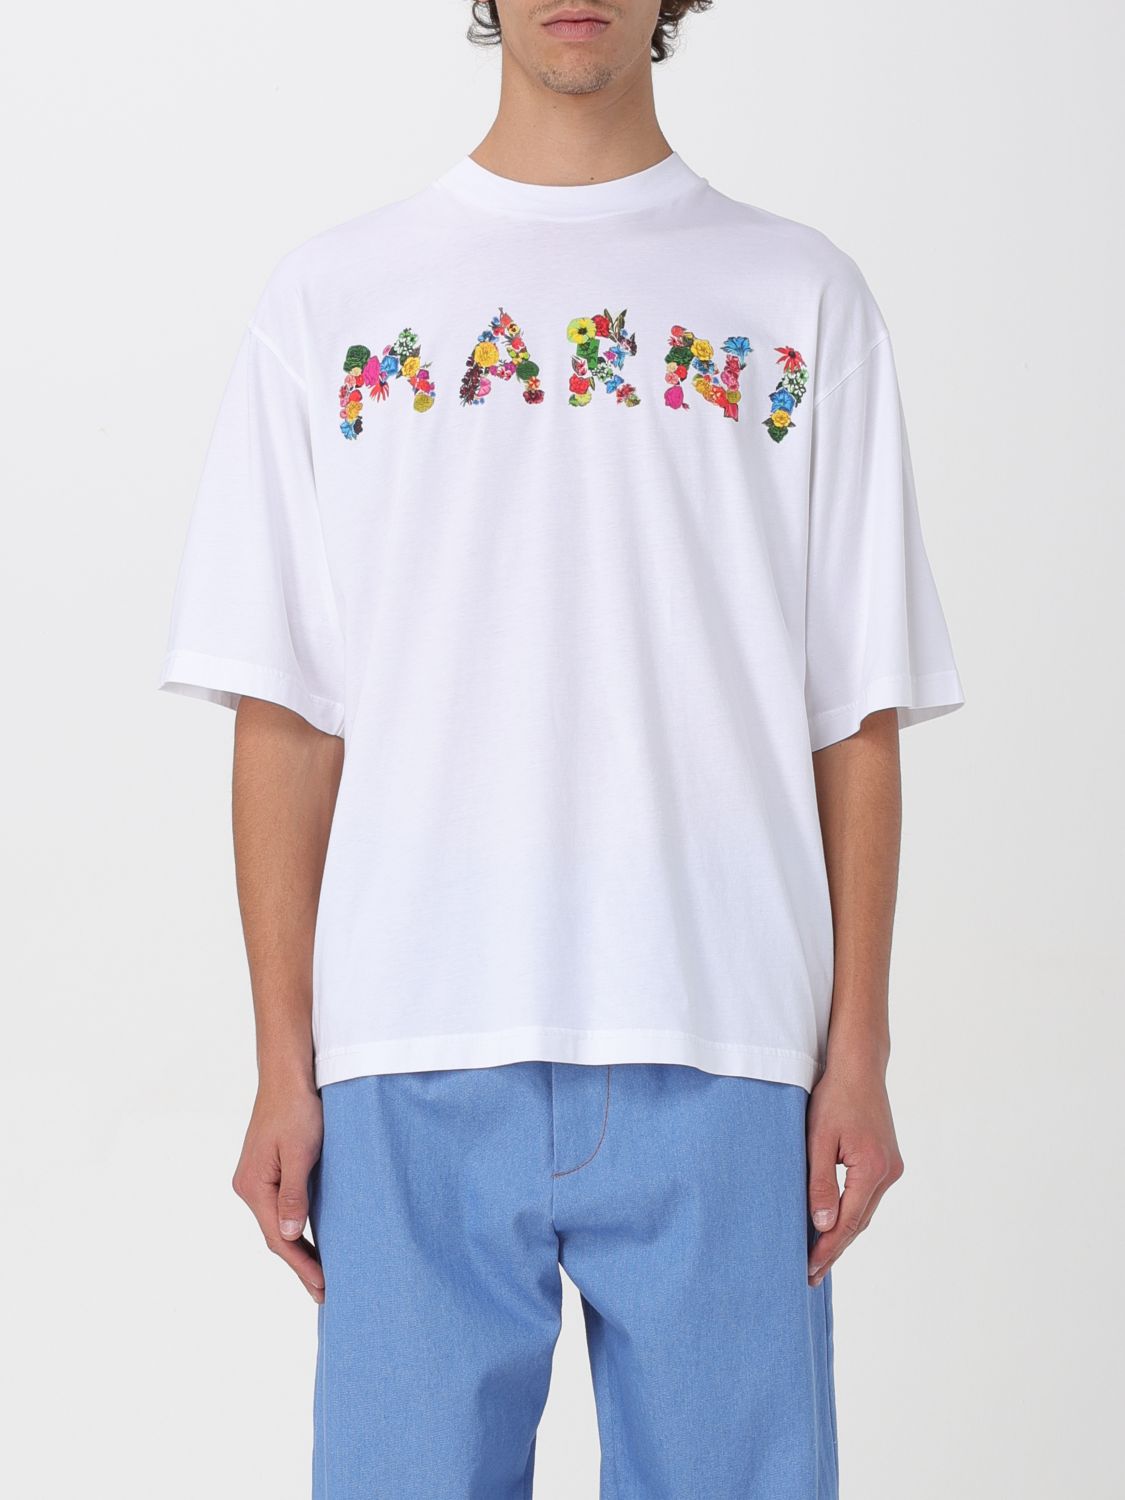 Marni T-shirt  Men Color White